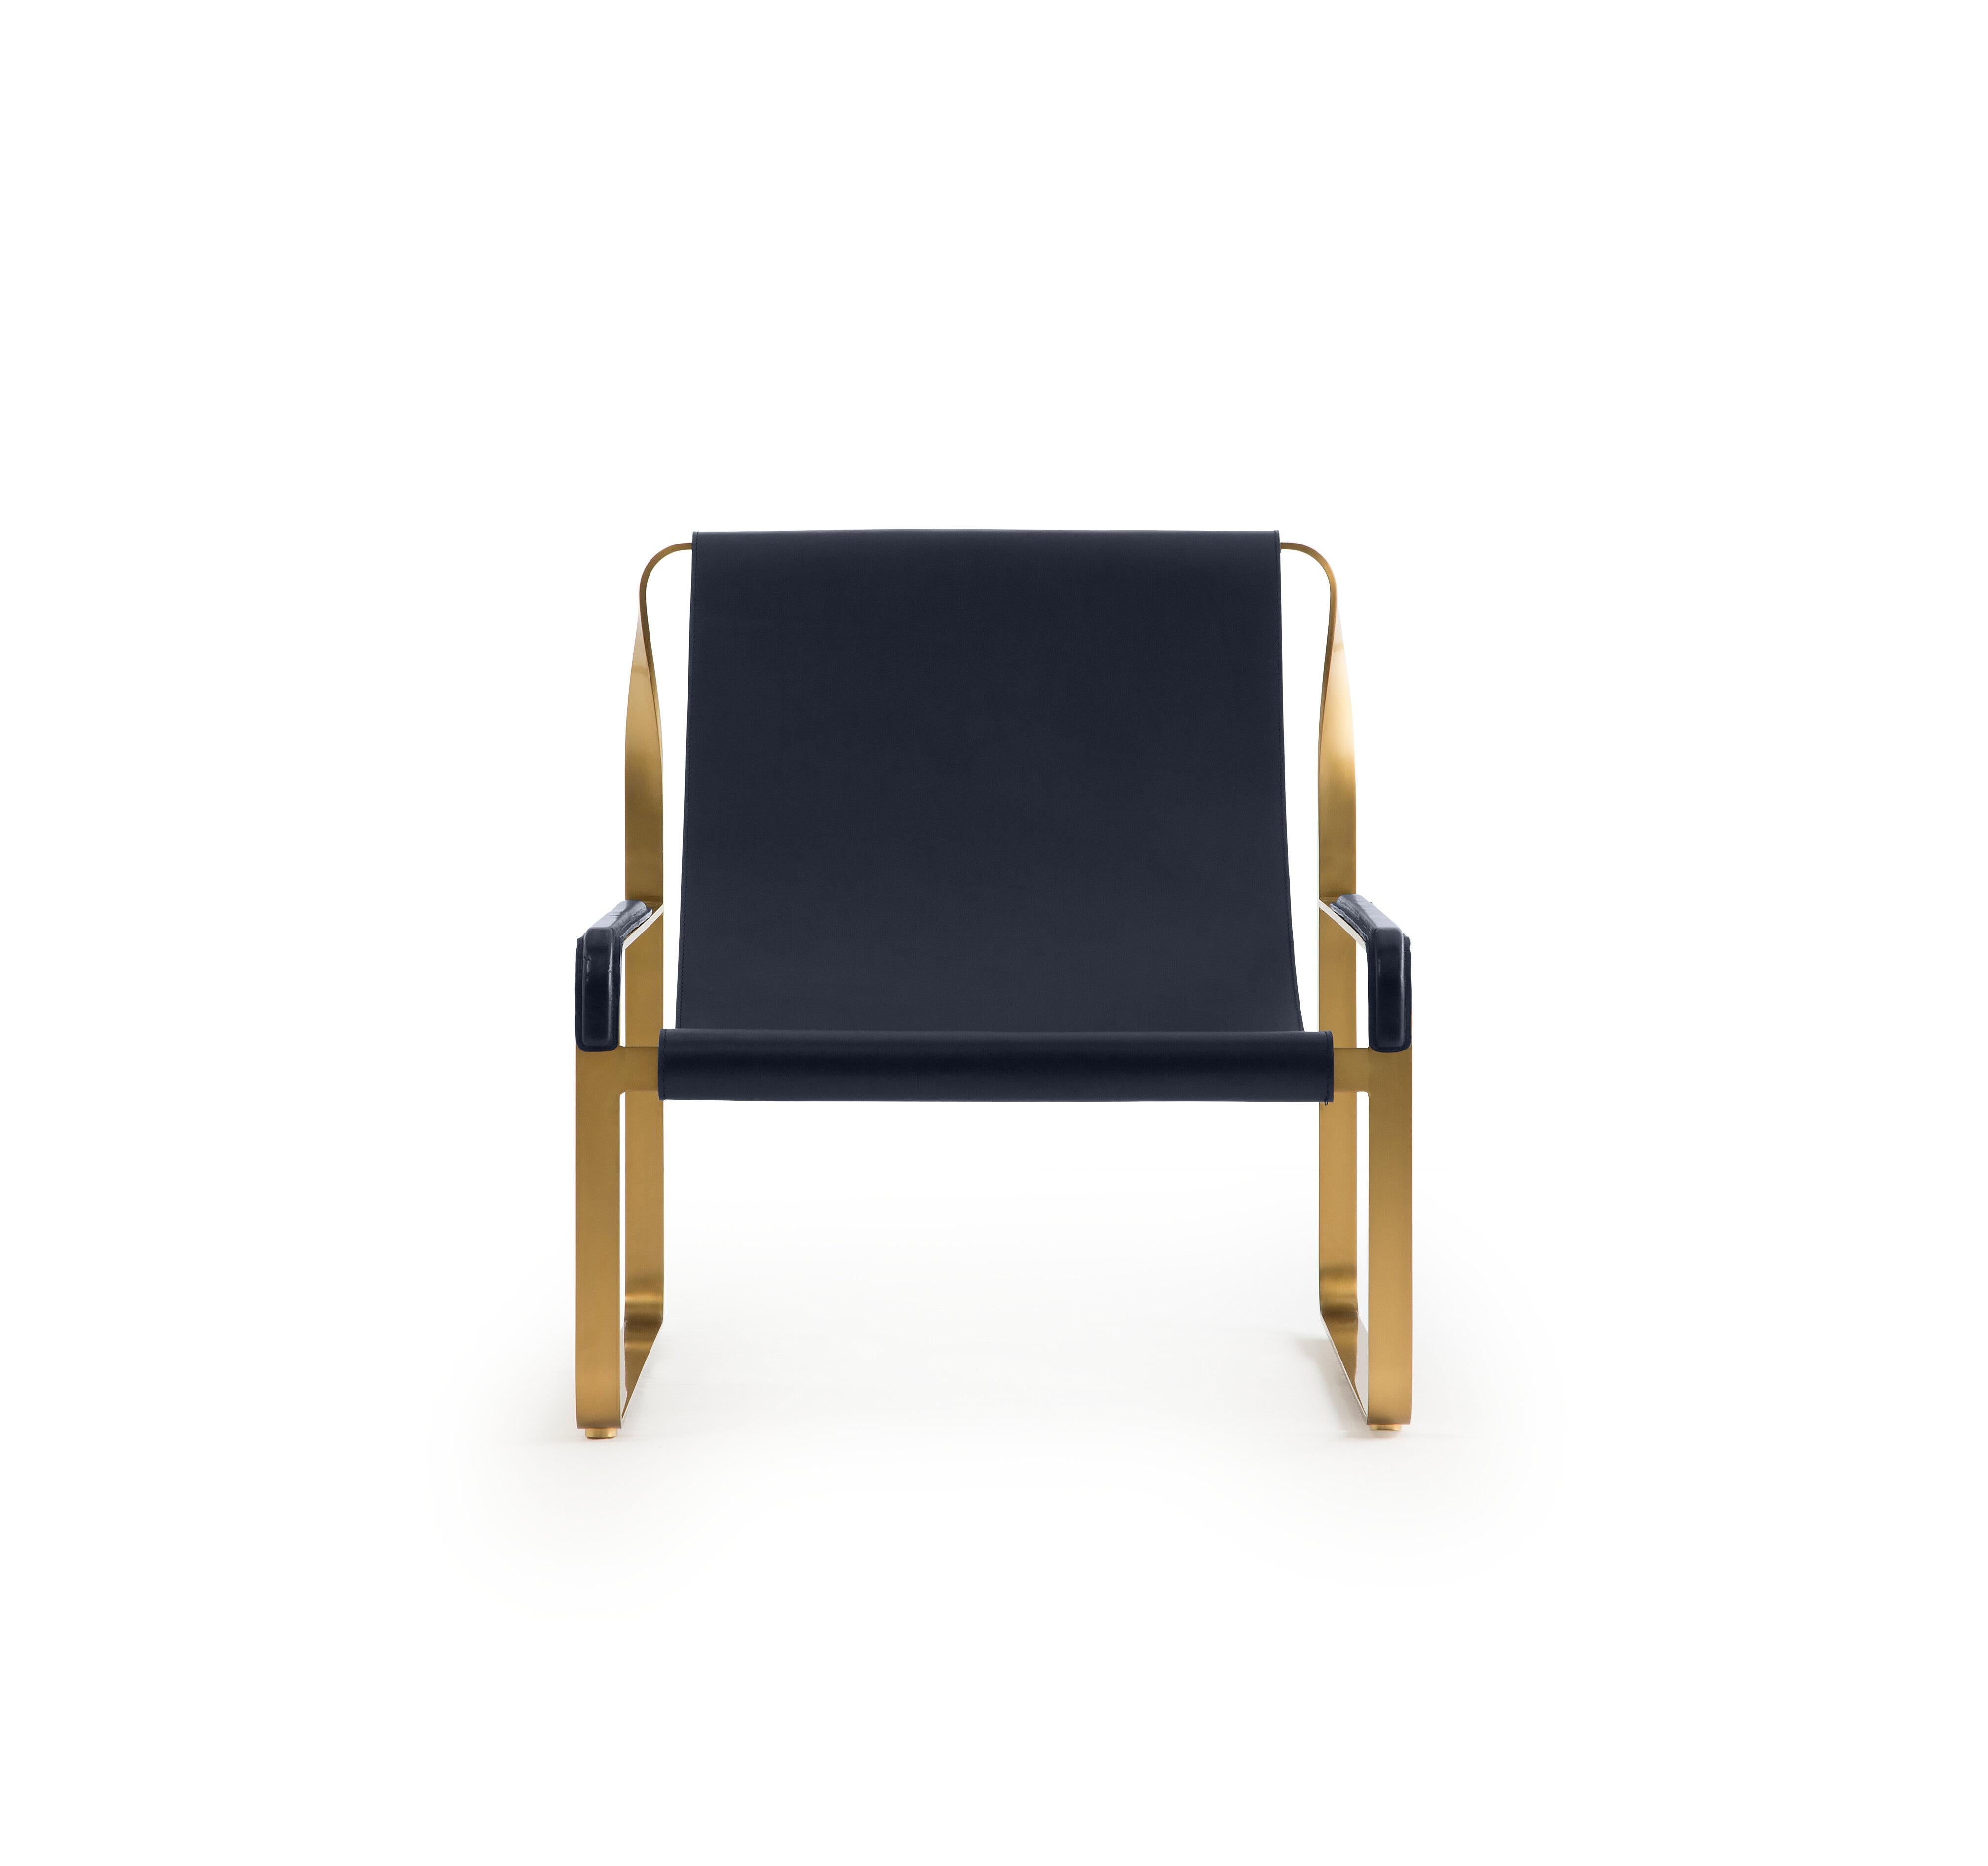 Exemple de salle d'exposition

La chaise longue contemporaine Wanderlust appartient à une collection de pièces minimalistes et sereines où l'exclusivité et la précision se manifestent dans de petits détails tels que les écrous et les boulons en